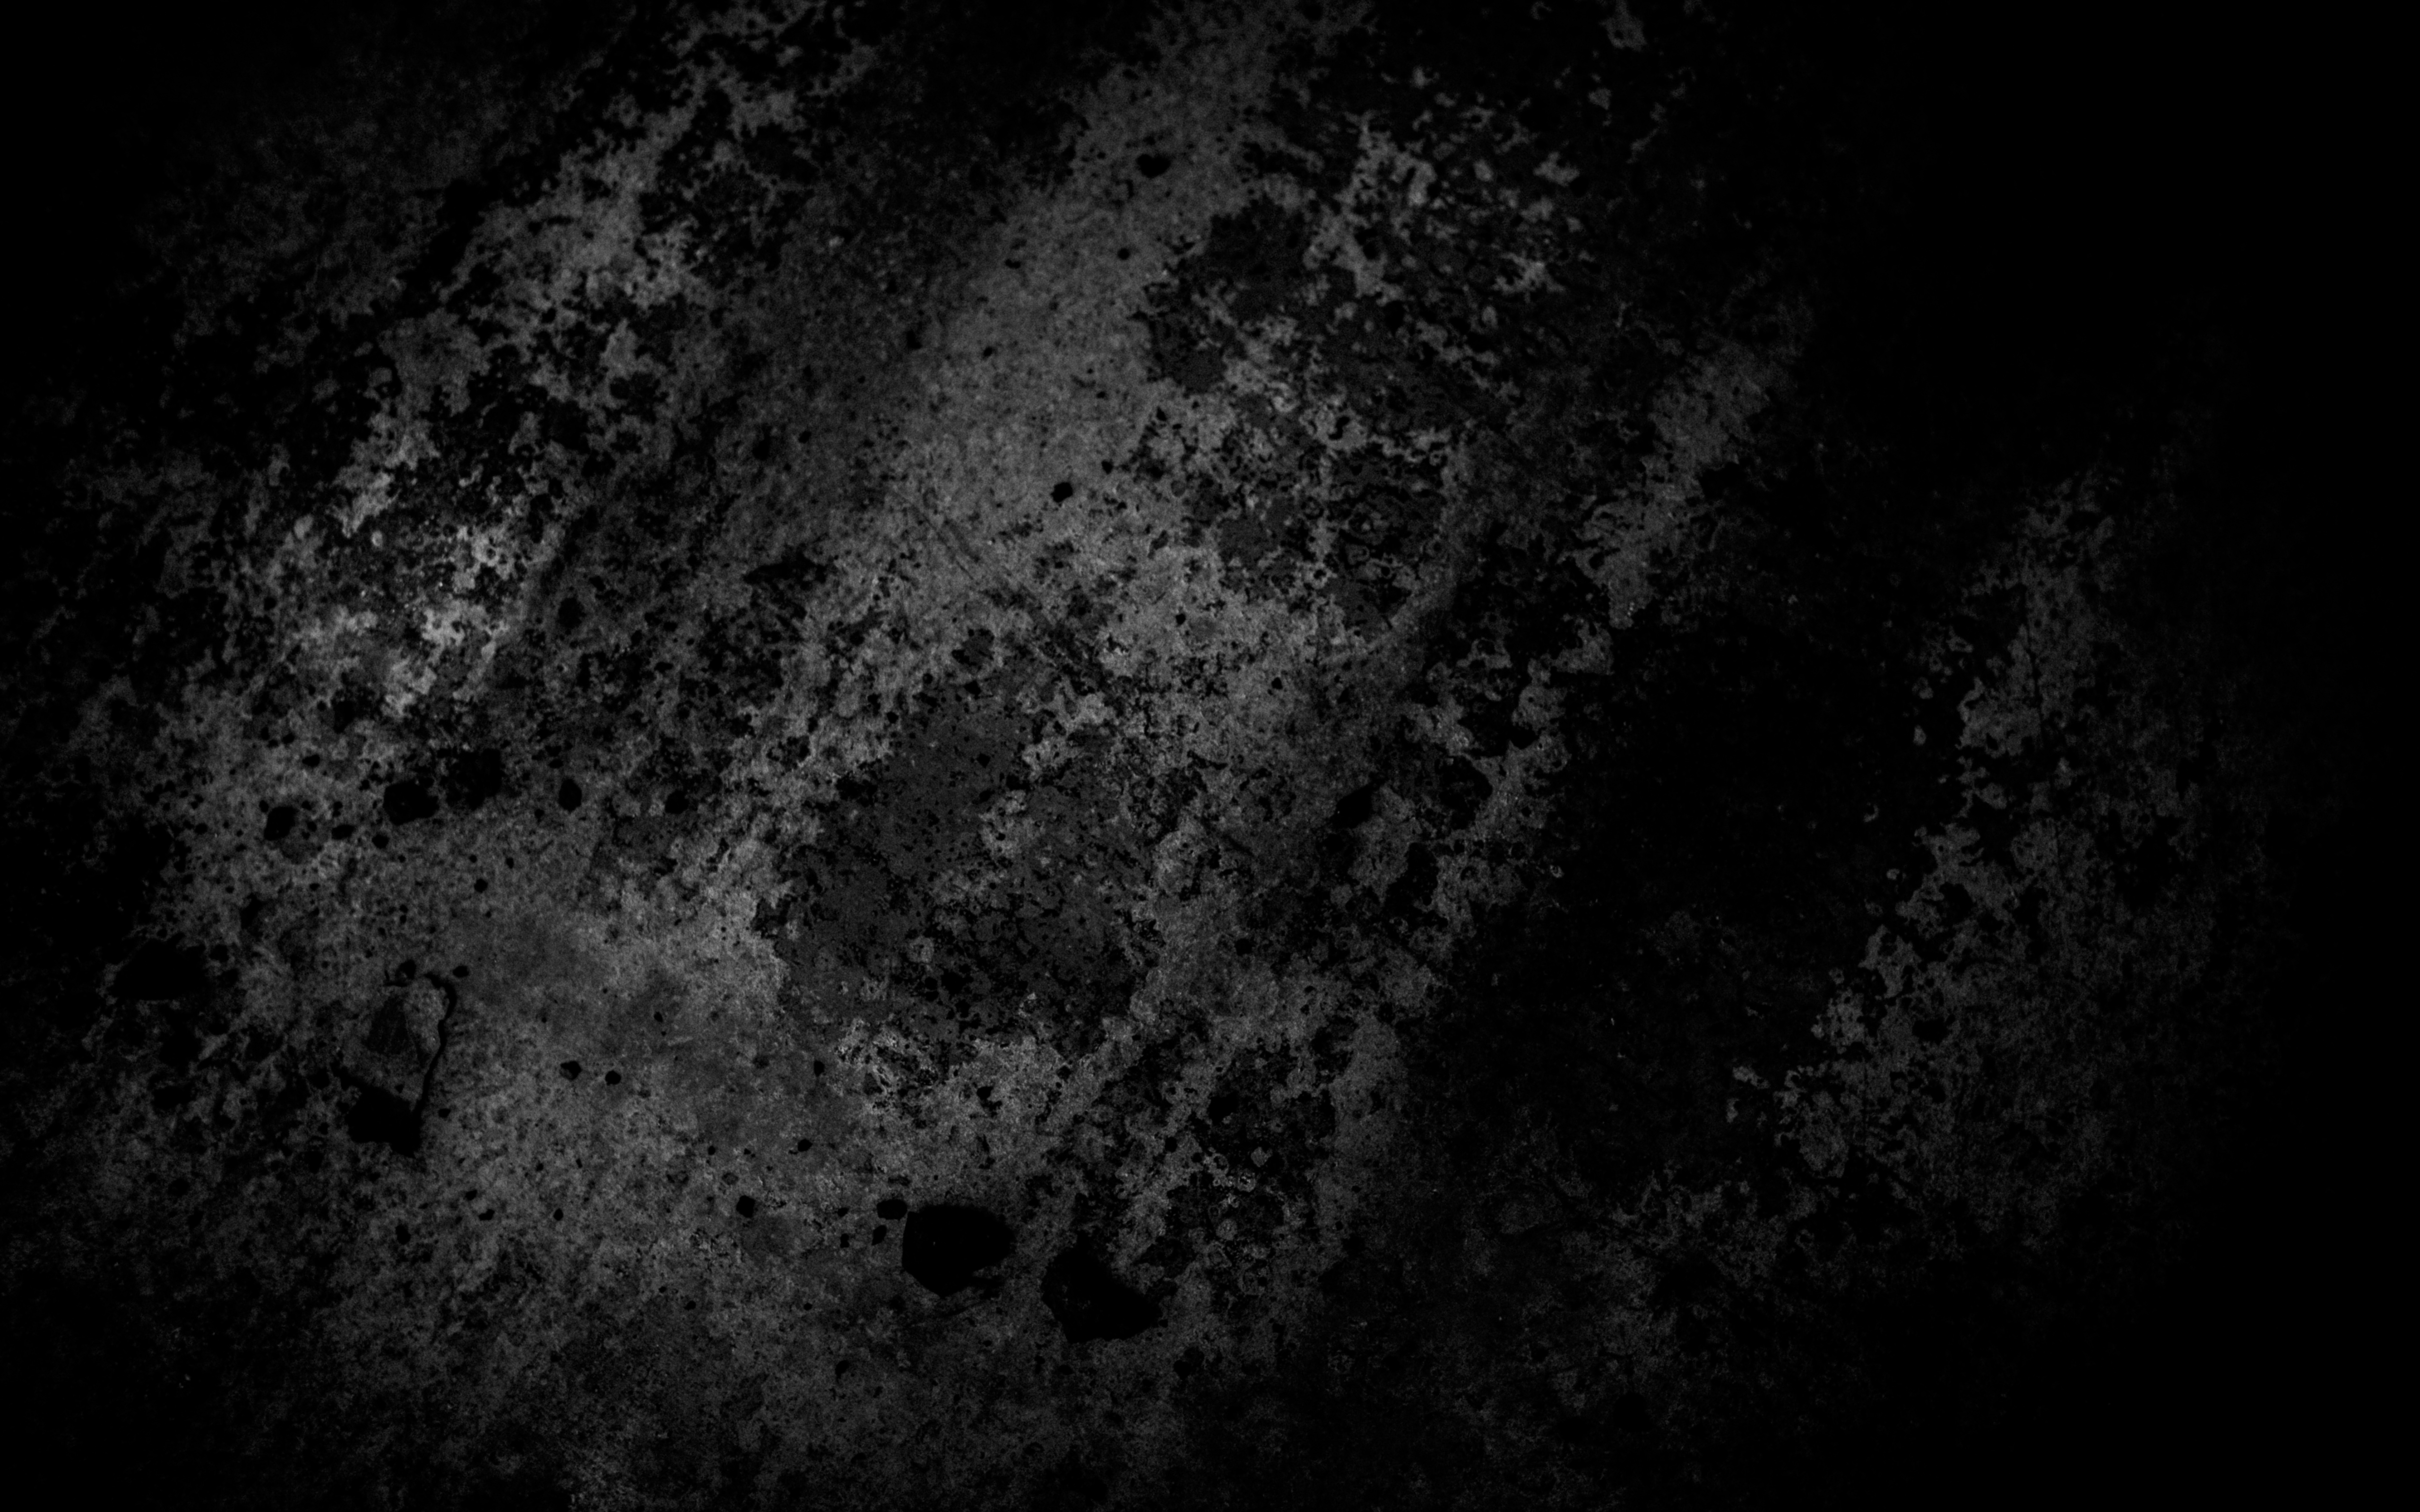 Dark Grunge Background 5K UHD 16:10 5120x3200 Wallpaper | UHD ...